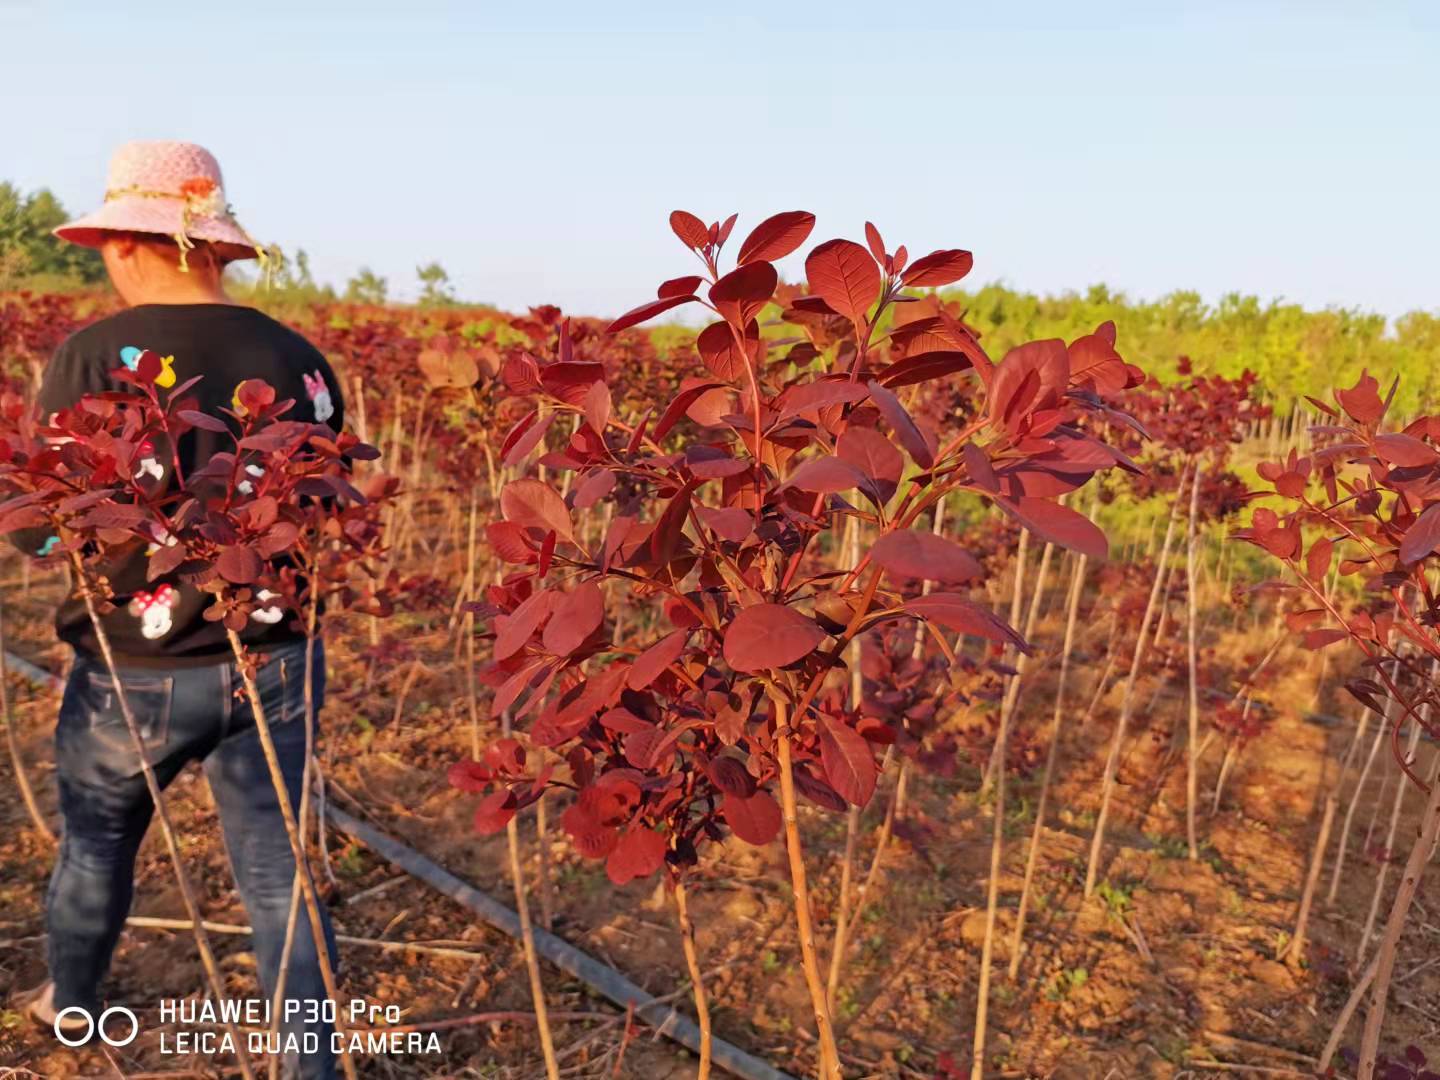 赛锦园林紫叶红栌销售 红叶树种适宜广西种植